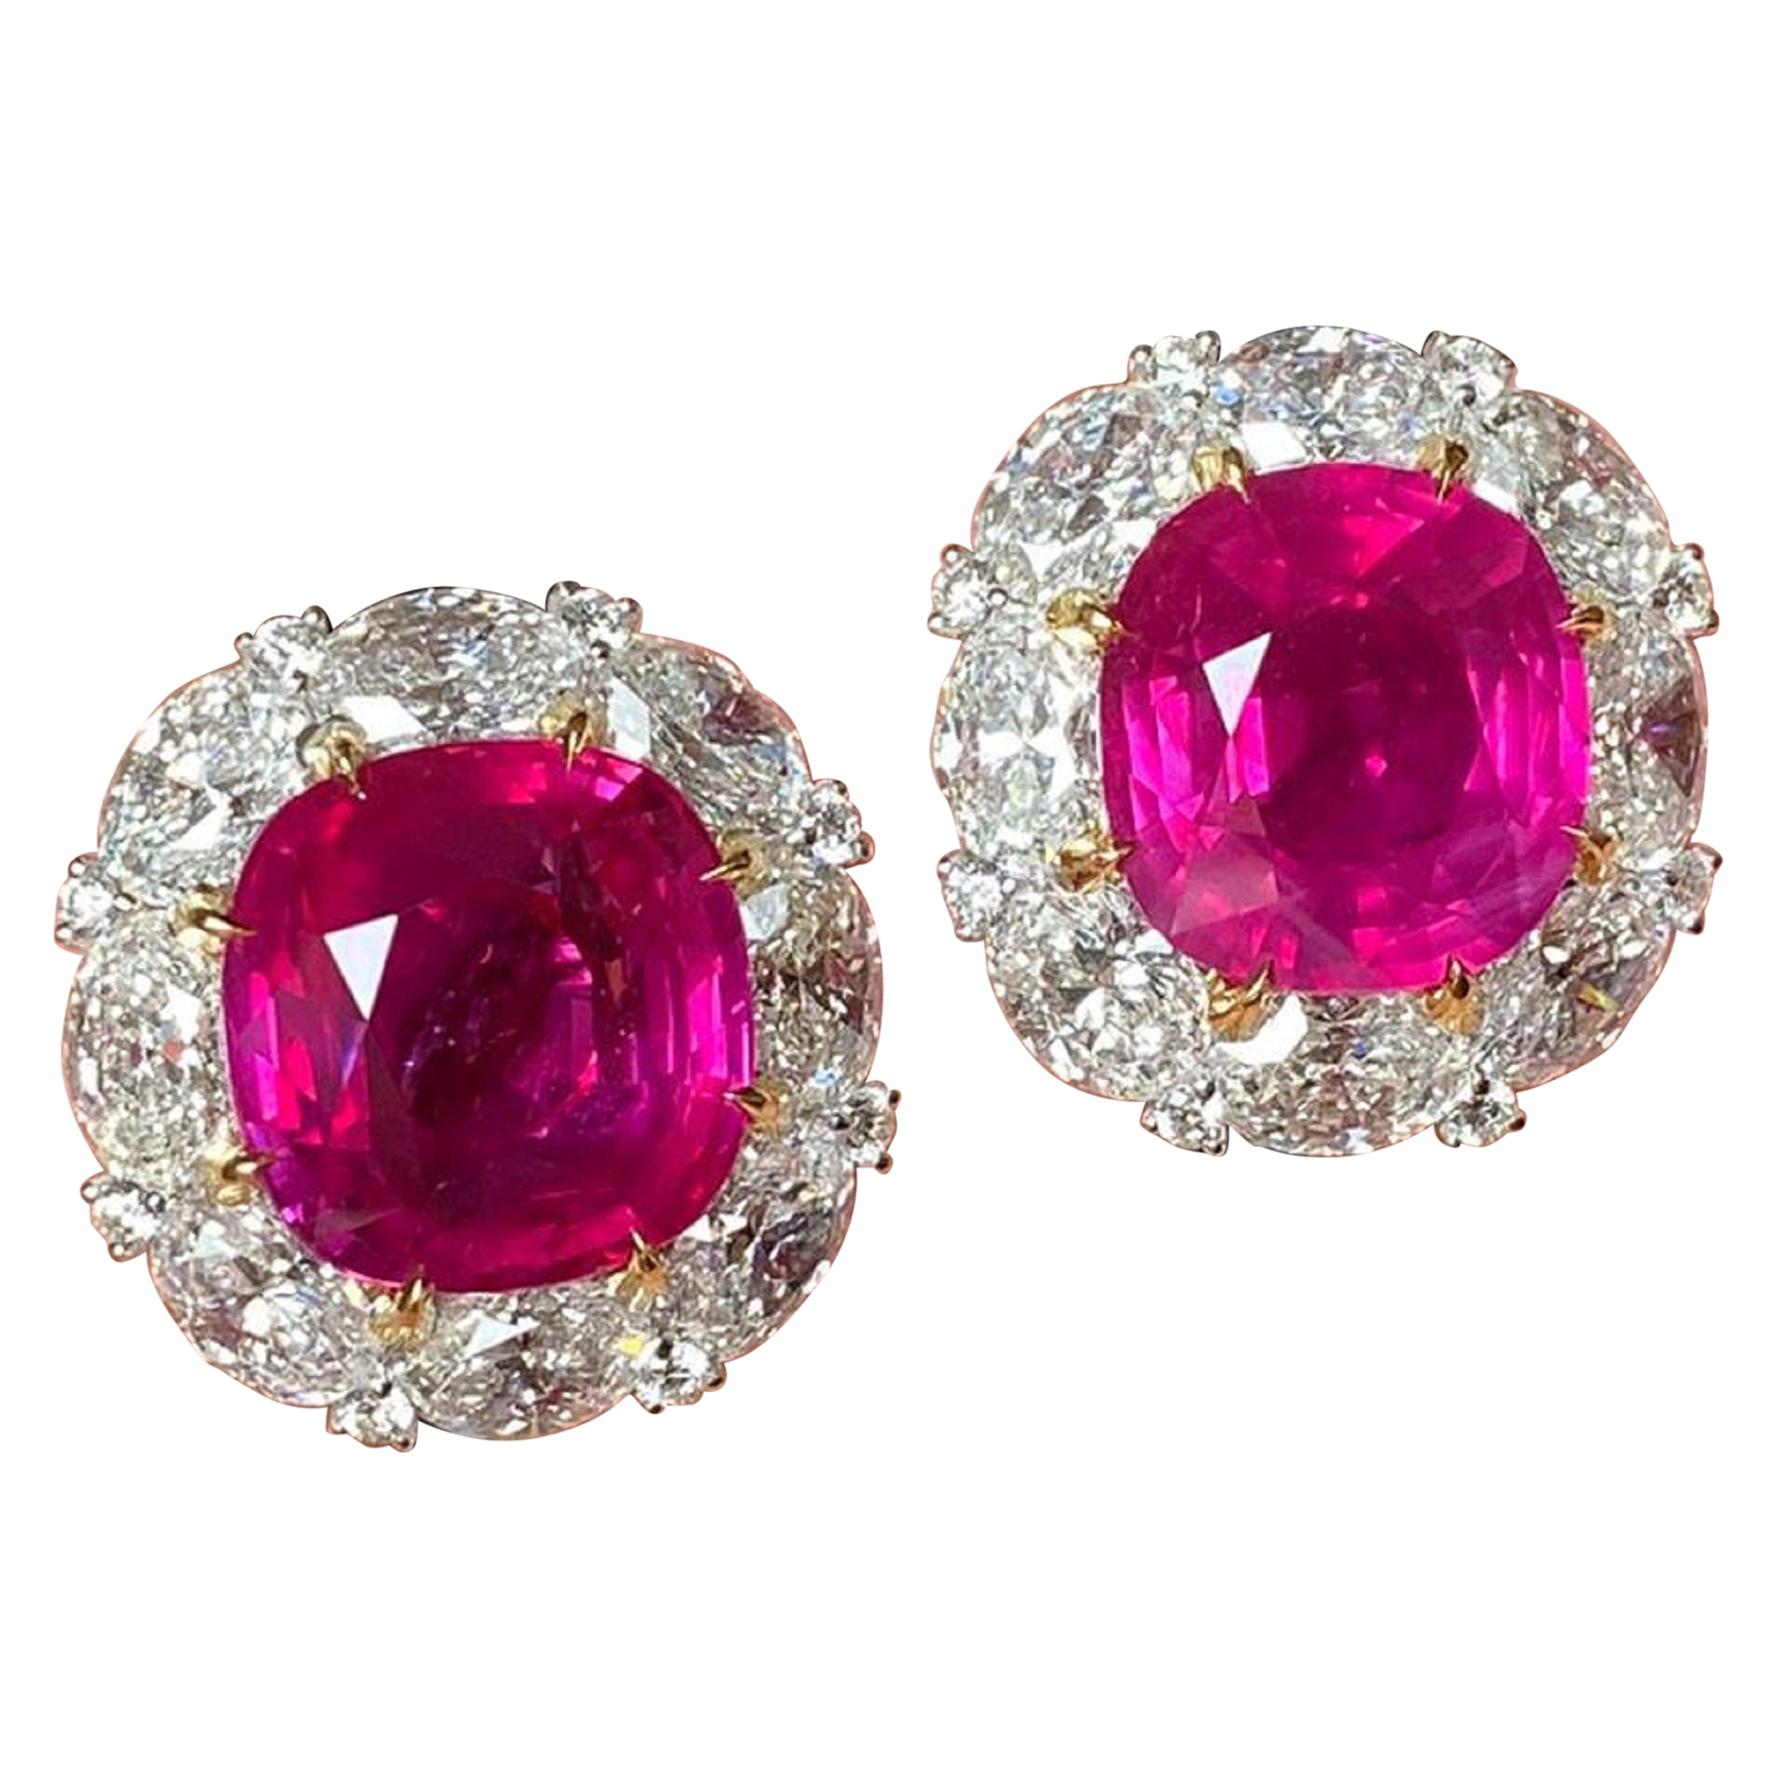 Gubelin Switzerland Certified 14 Carat Burma Ruby Diamond Halo Earrings